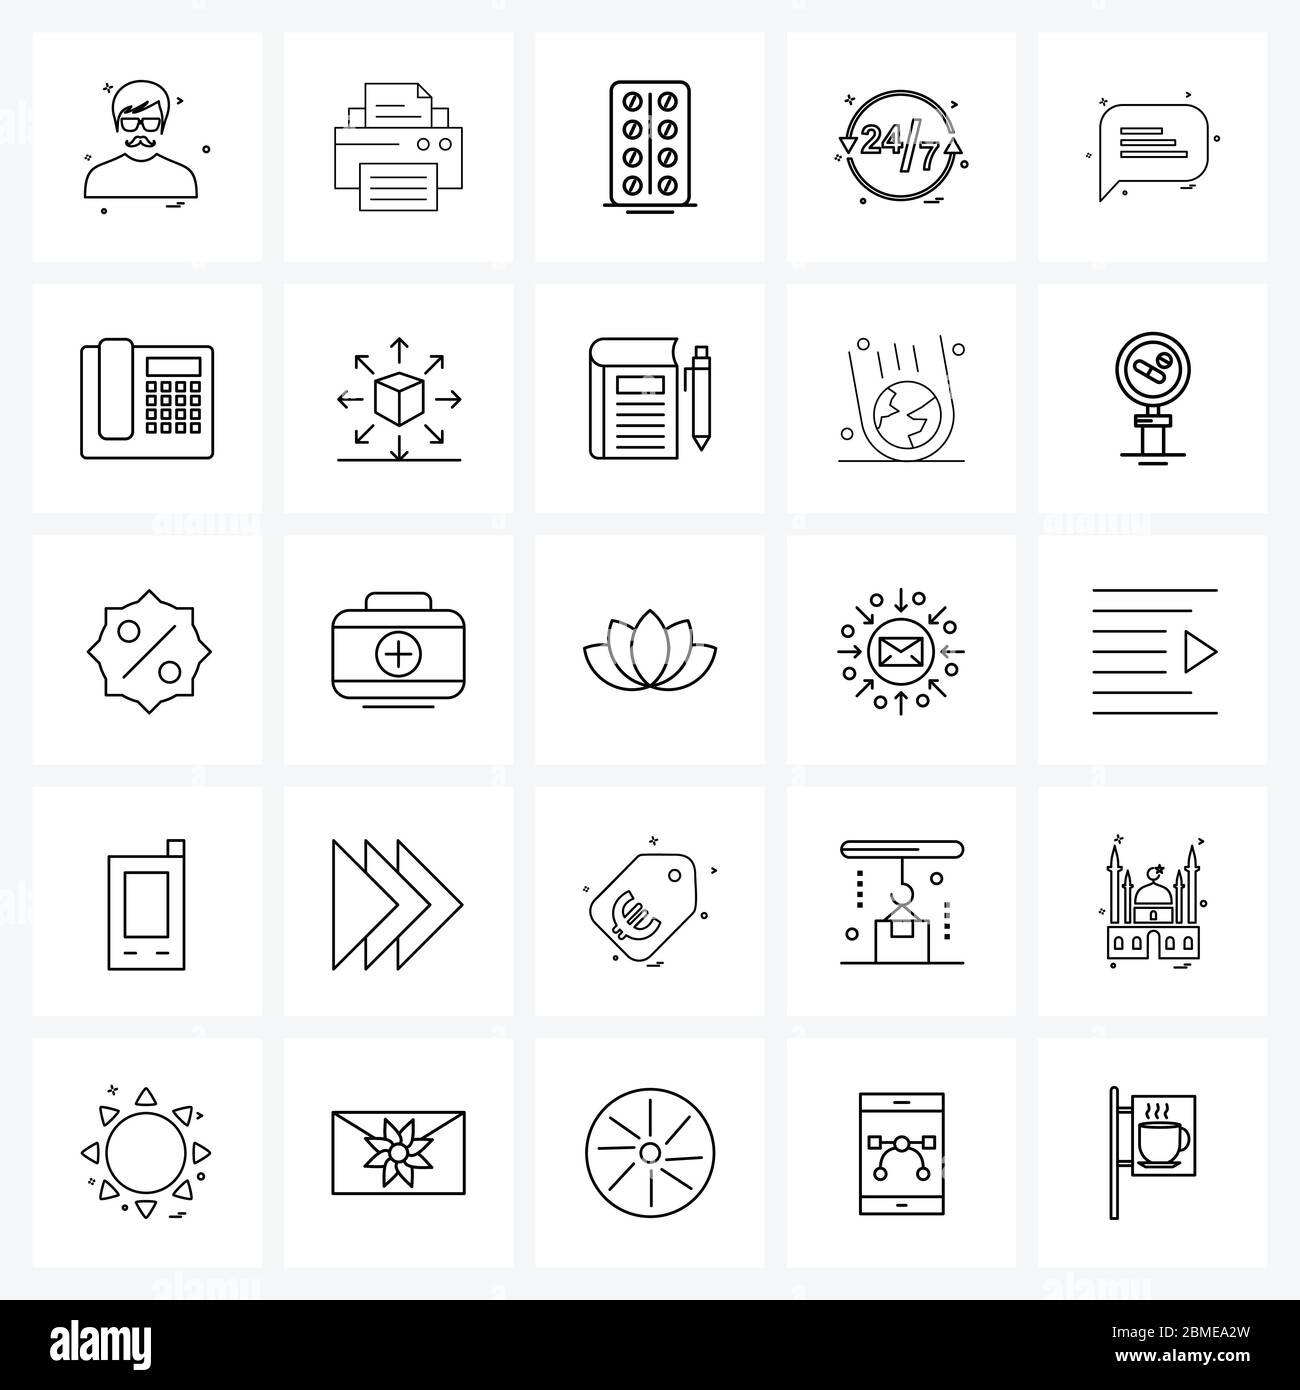 25 icône de ligne d'interface ensemble de symboles modernes sur l'appel, le téléphone, les heures, le chat, le message Illustration vectorielle Illustration de Vecteur